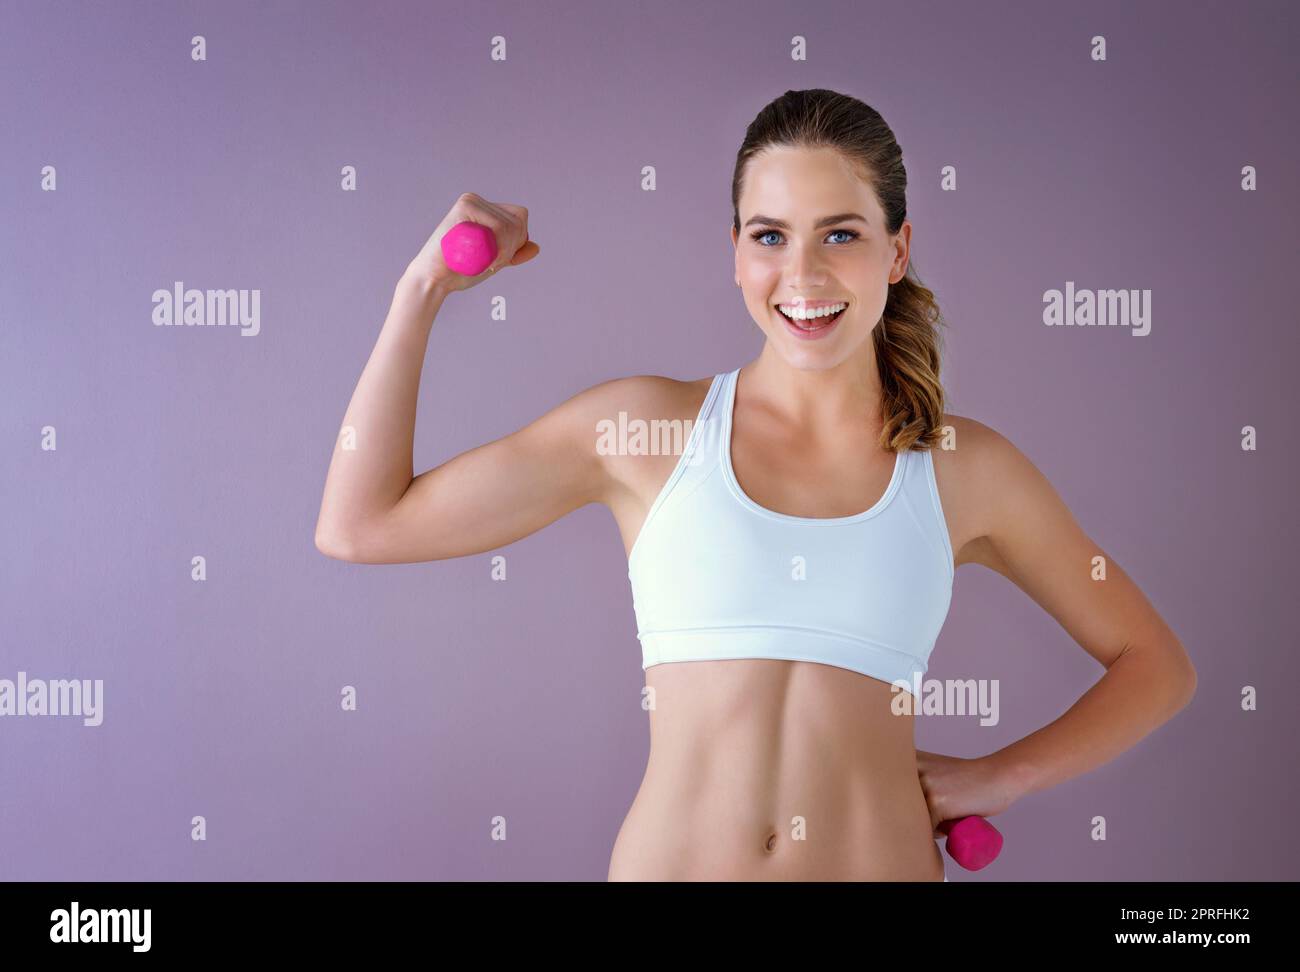 Heben Sie Gewichte dann Gewicht zu verlieren. Studioaufnahme einer gesunden jungen Frau, die Hanteln vor einem violetten Hintergrund hält. Stockfoto